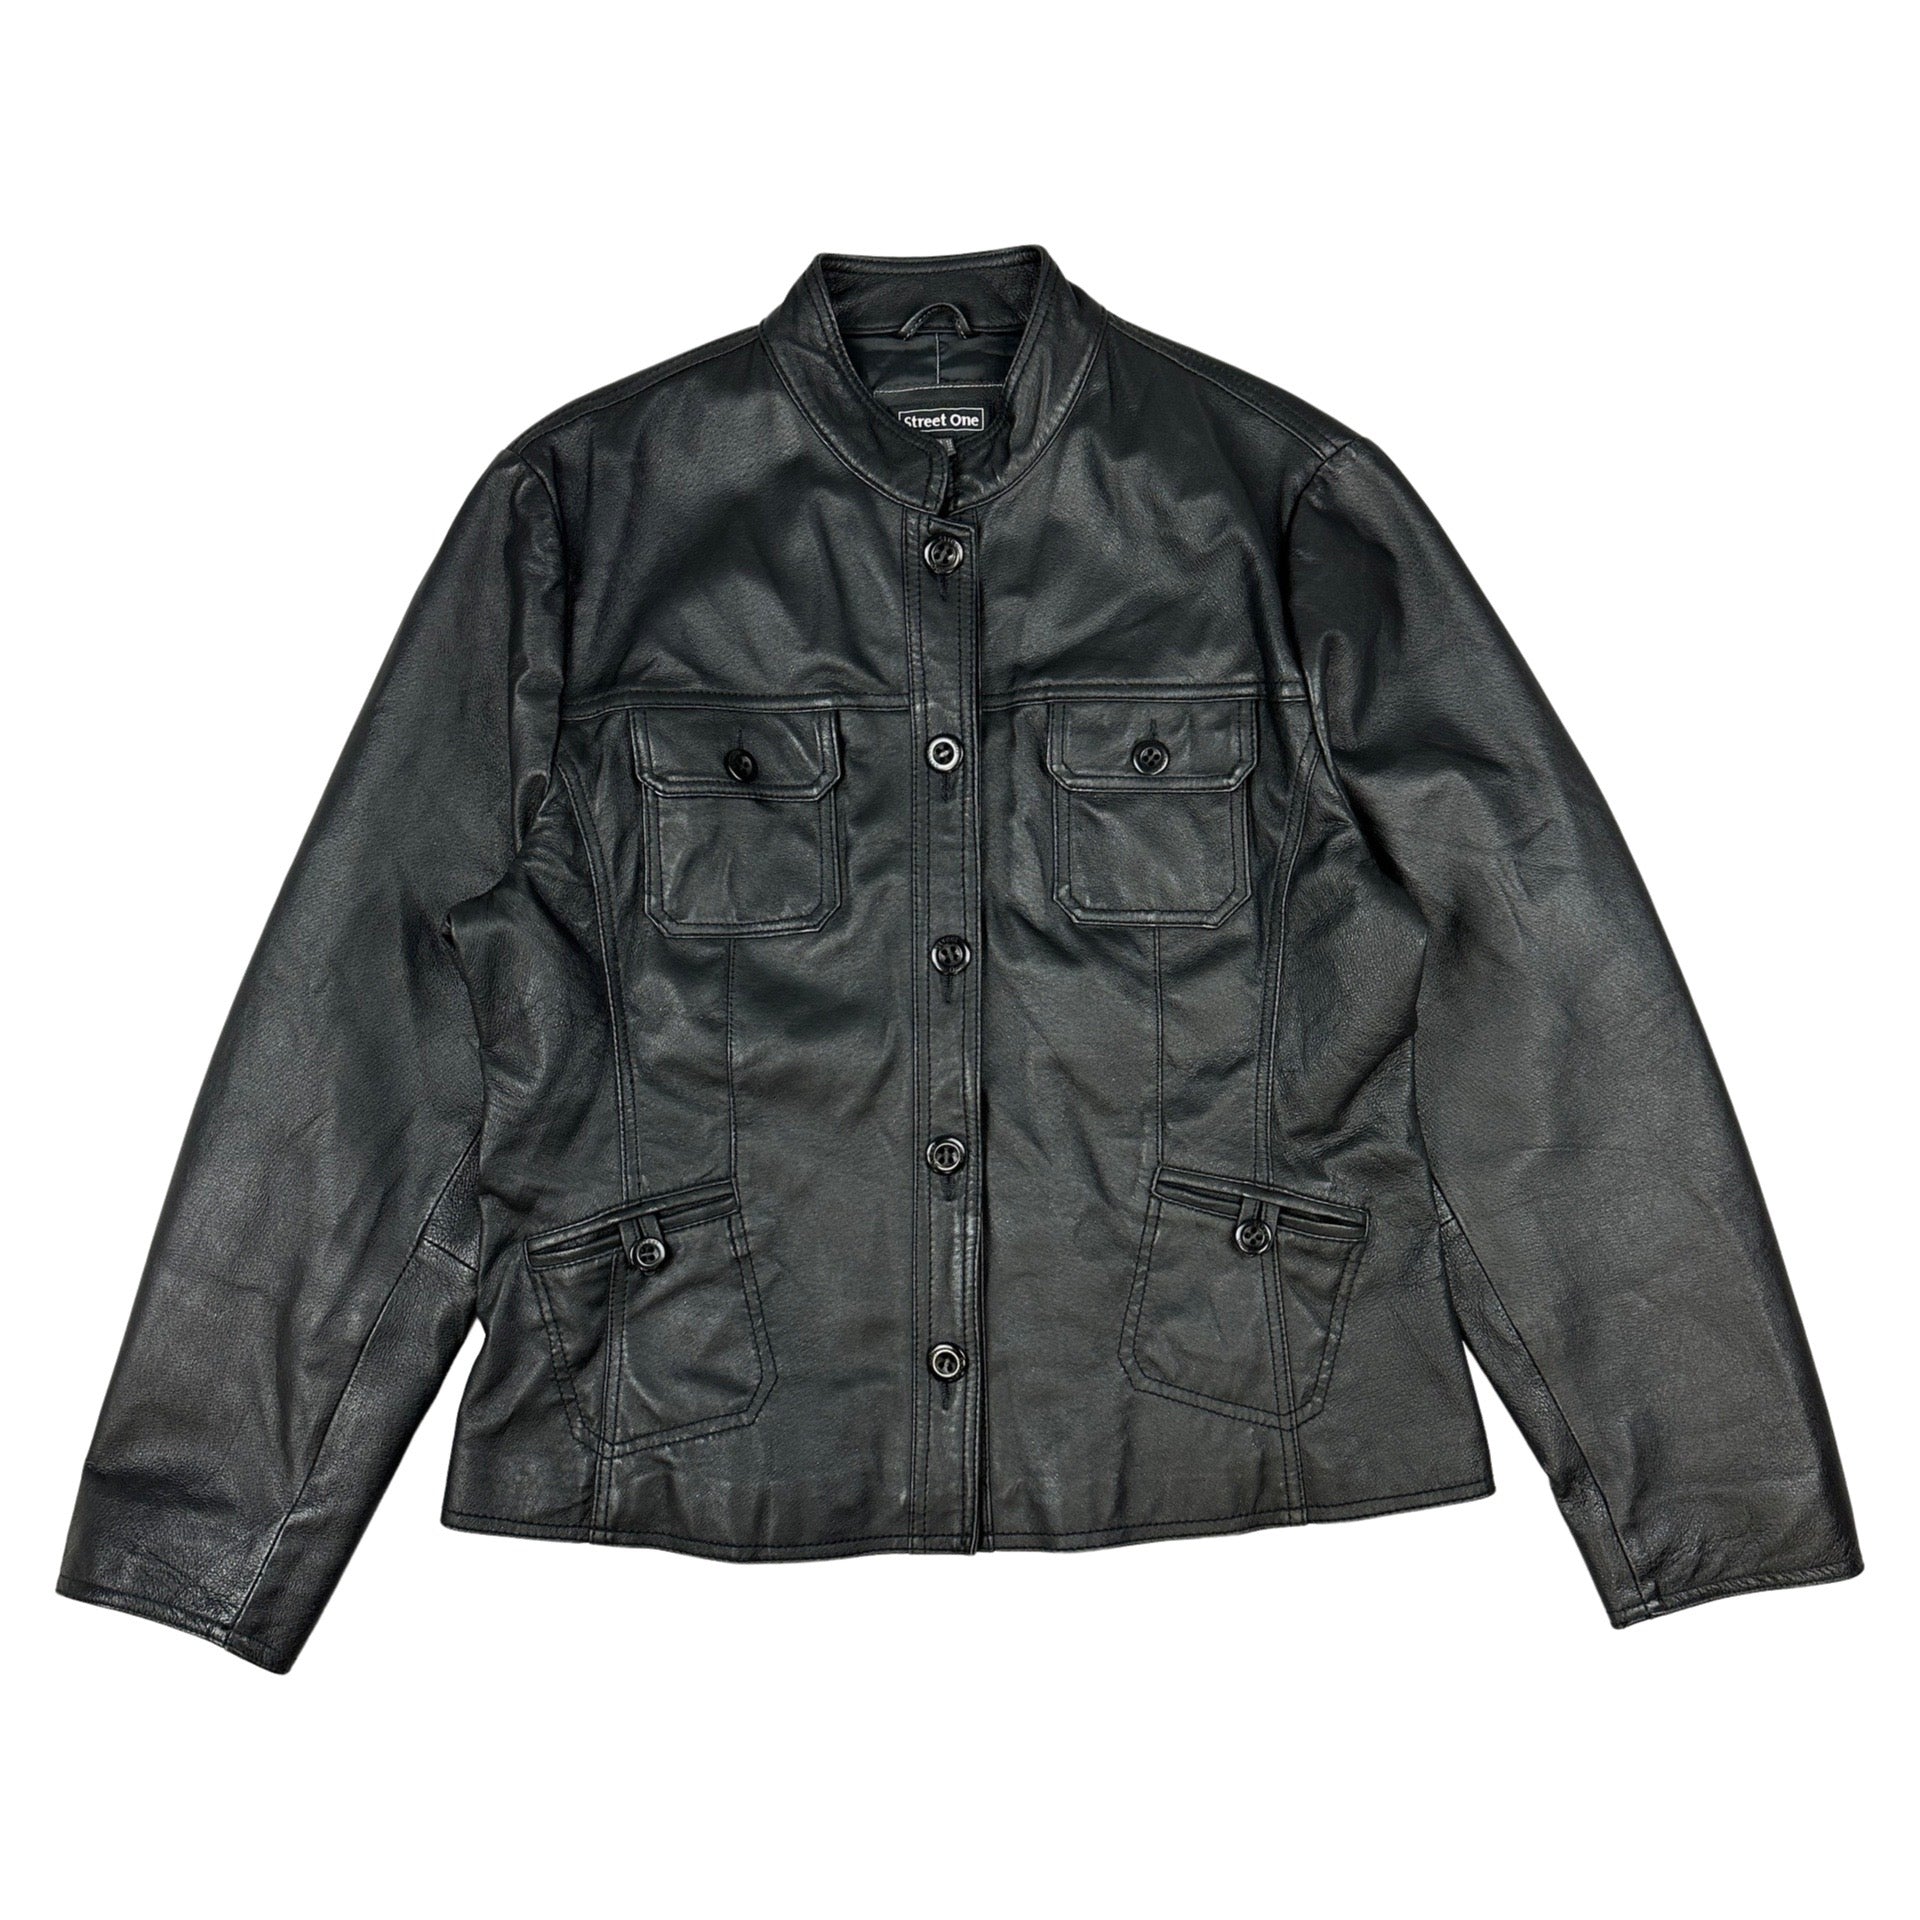 00s archive obelisk leather jacket y2kサイズM